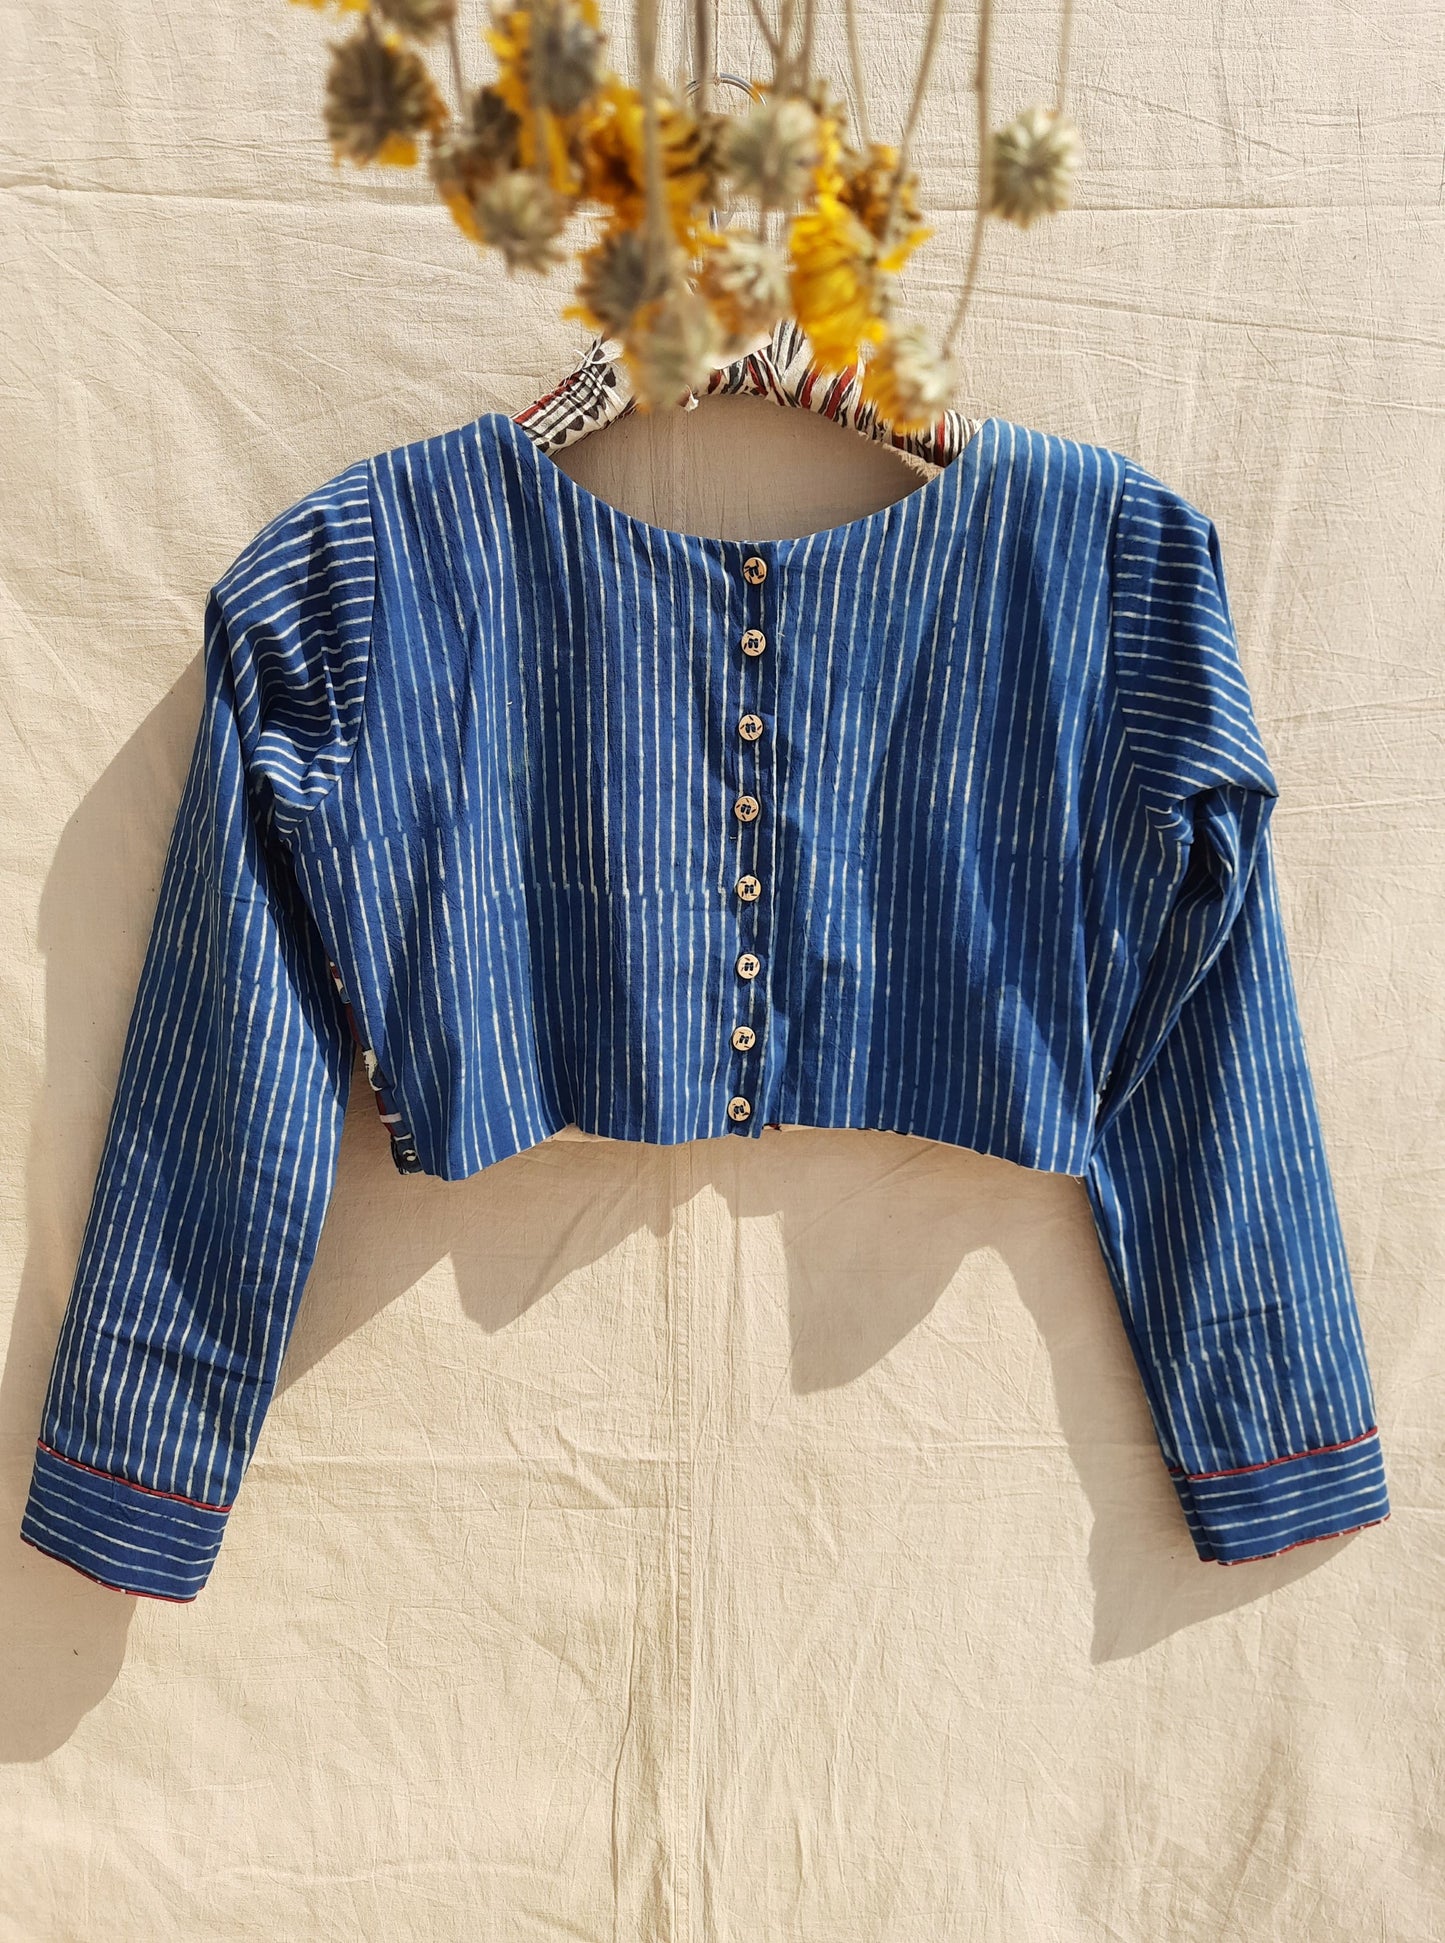 Indigo ajrakh blouse, Ajrakh hand block print indigo dyed blouse, Slow fashion